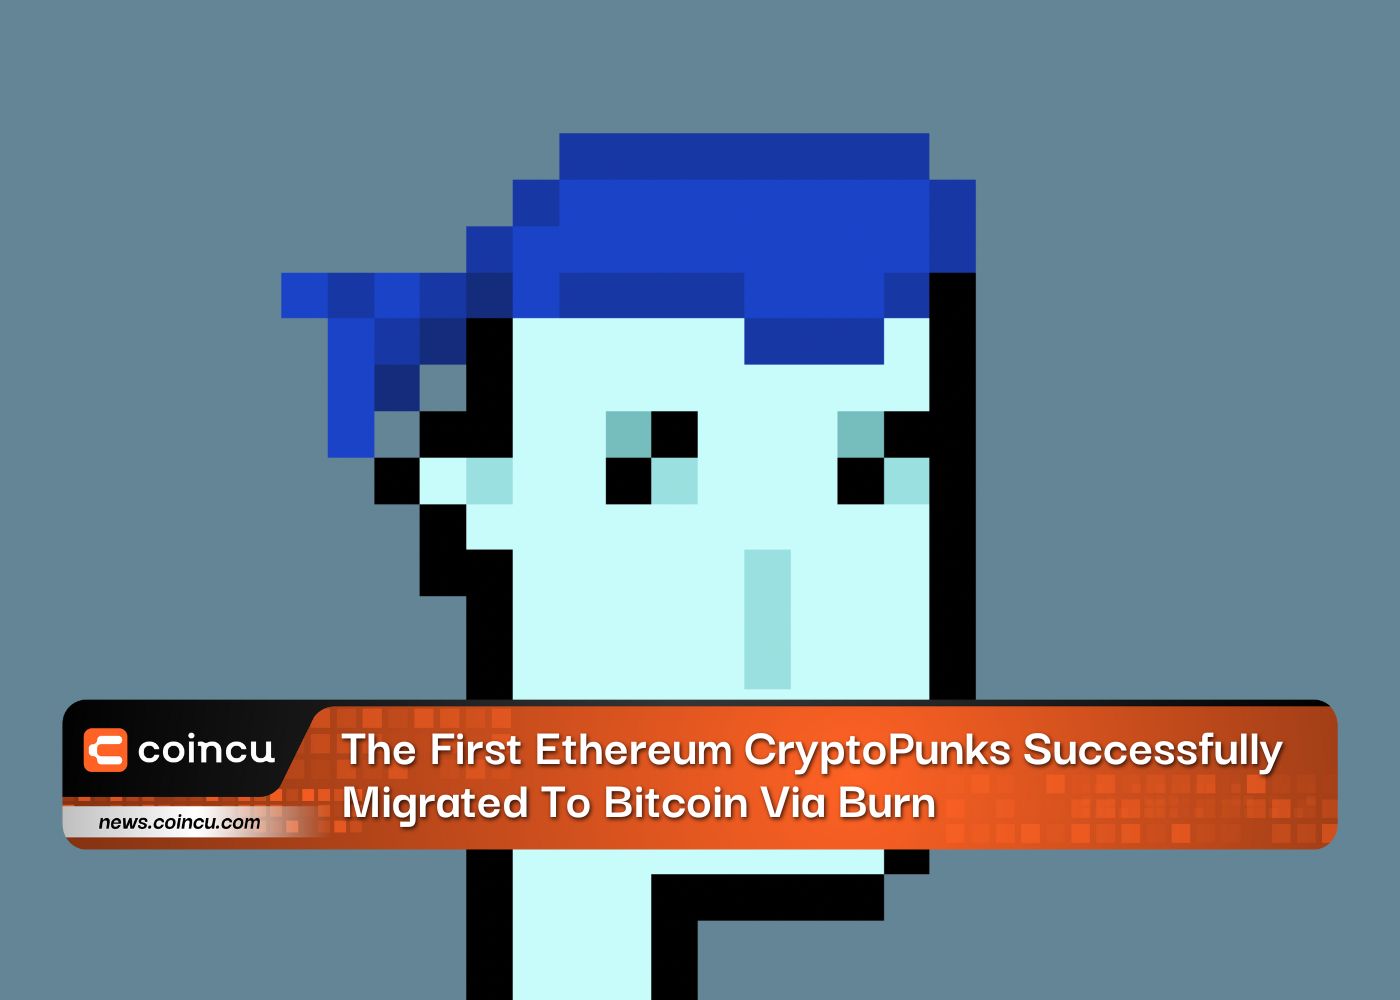 첫 번째 Ethereum CryptoPunks는 Burn을 통해 Bitcoin으로 성공적으로 마이그레이션되었습니다.